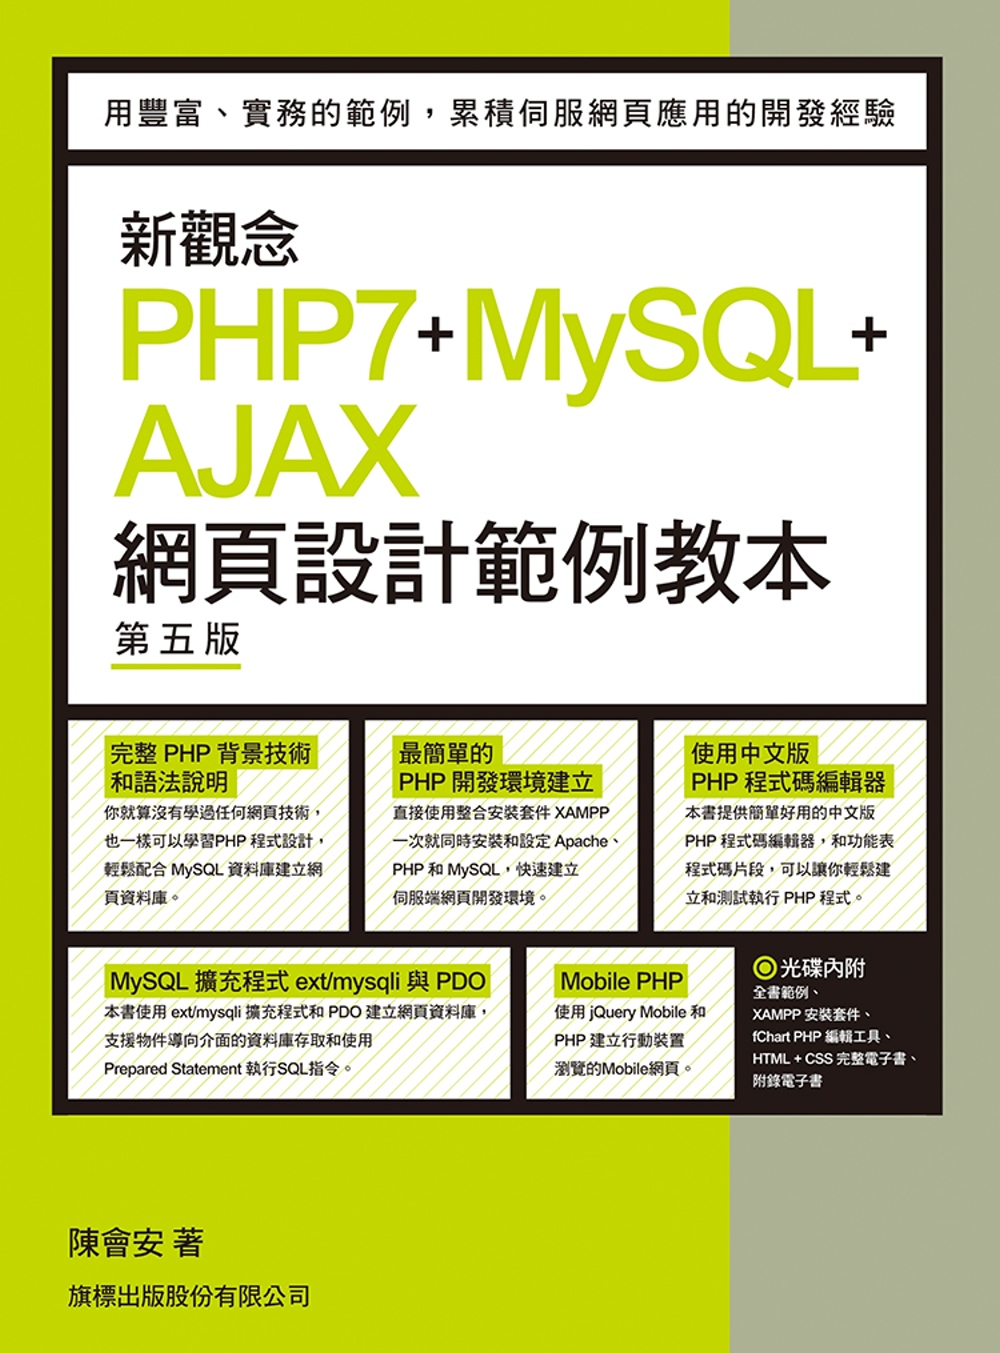 新觀念 PHP7+MySQL+AJAX 網頁設計範例教本 第五版